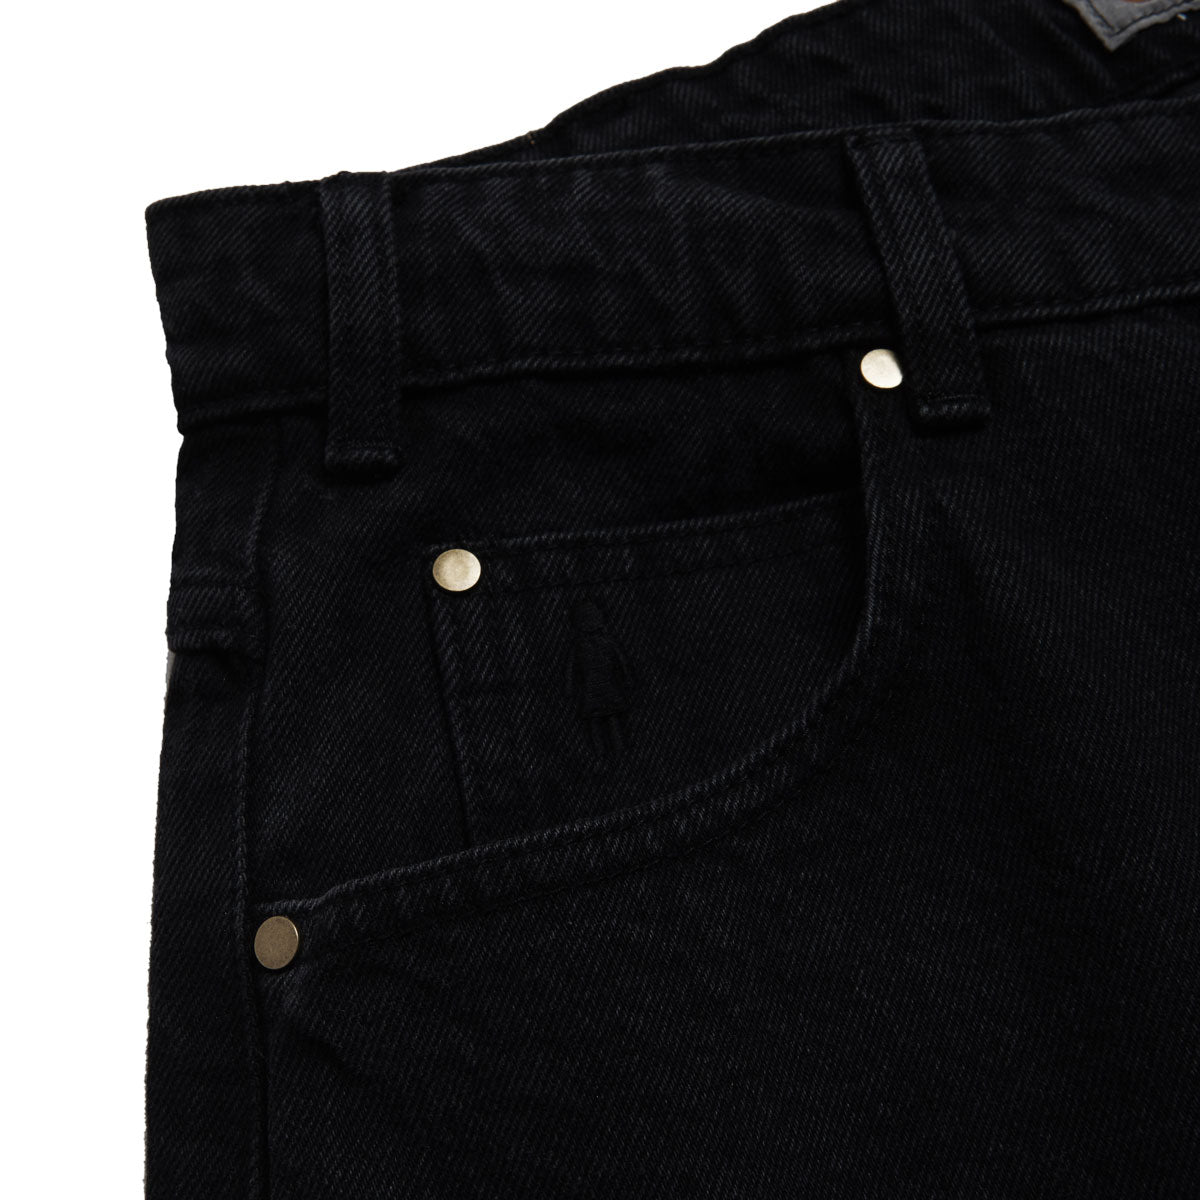 Girl Jeans - Washed Black image 3